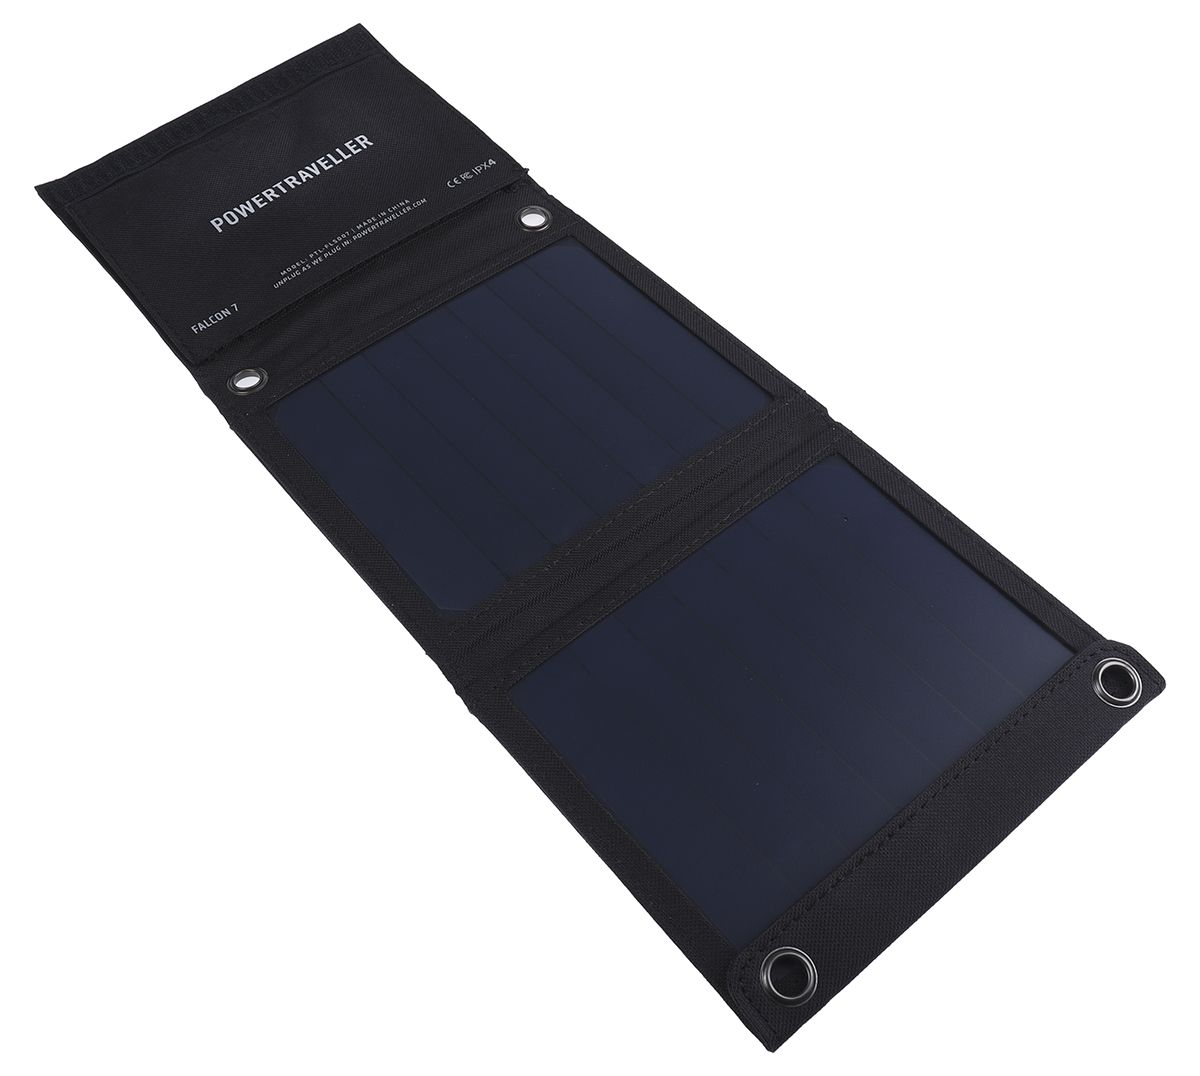 Powertraveller Falcon 7 Solar Solar-Ladegerät 7W 5V